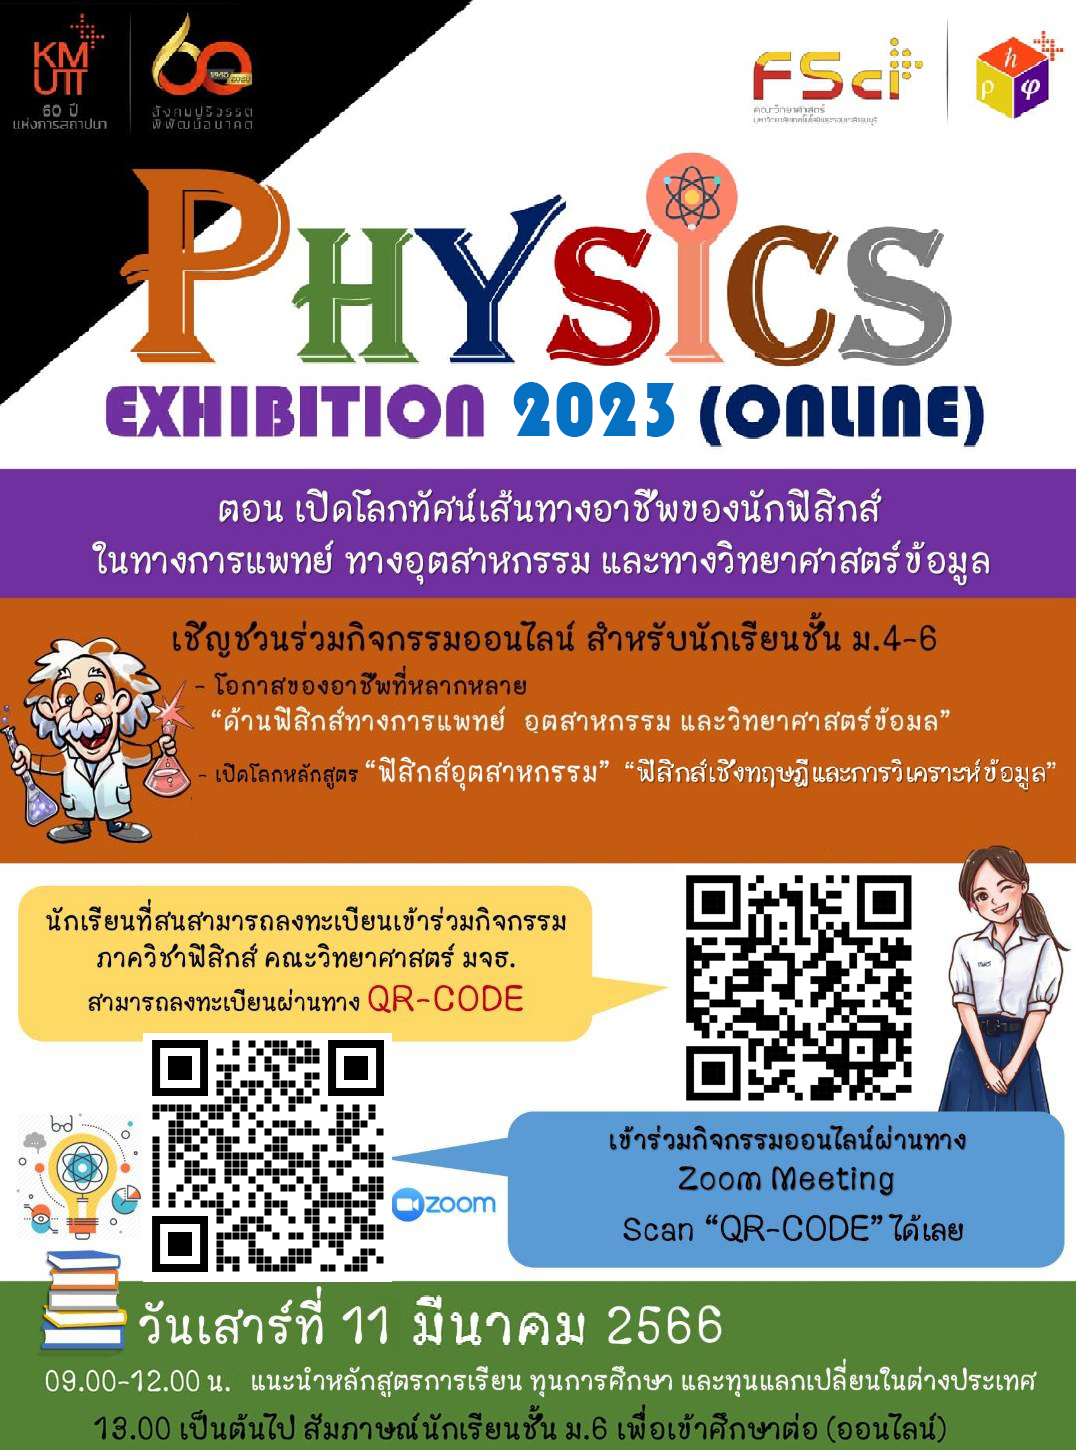 Physics Exhibition 2023 (online) ตอน เปิดโลกทัศน์เส้นทางอาชีพของนักฟิสิกส์ ในทางการแพทย์ ทางอุตสาหกรรม และทางวิทยาศาสตร์ข้อมูล